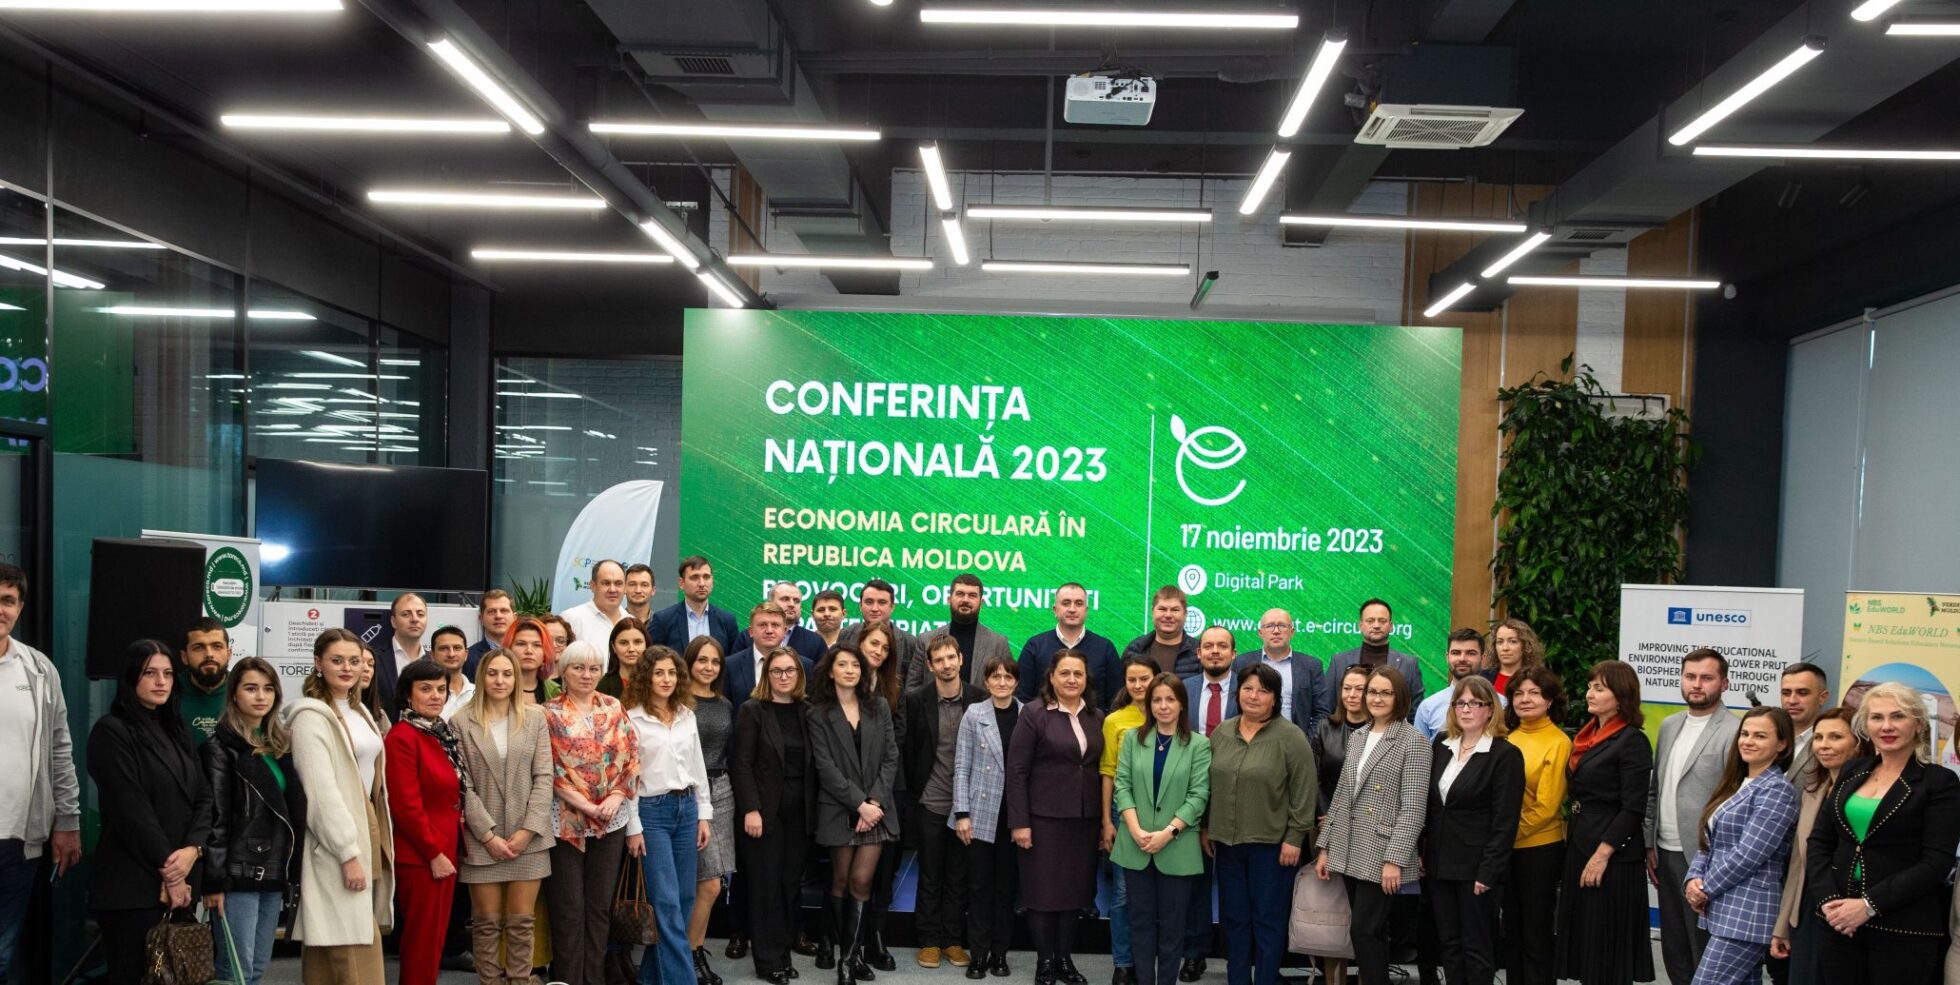 Conferința națională 2023 – economia circulară în Republica Moldova